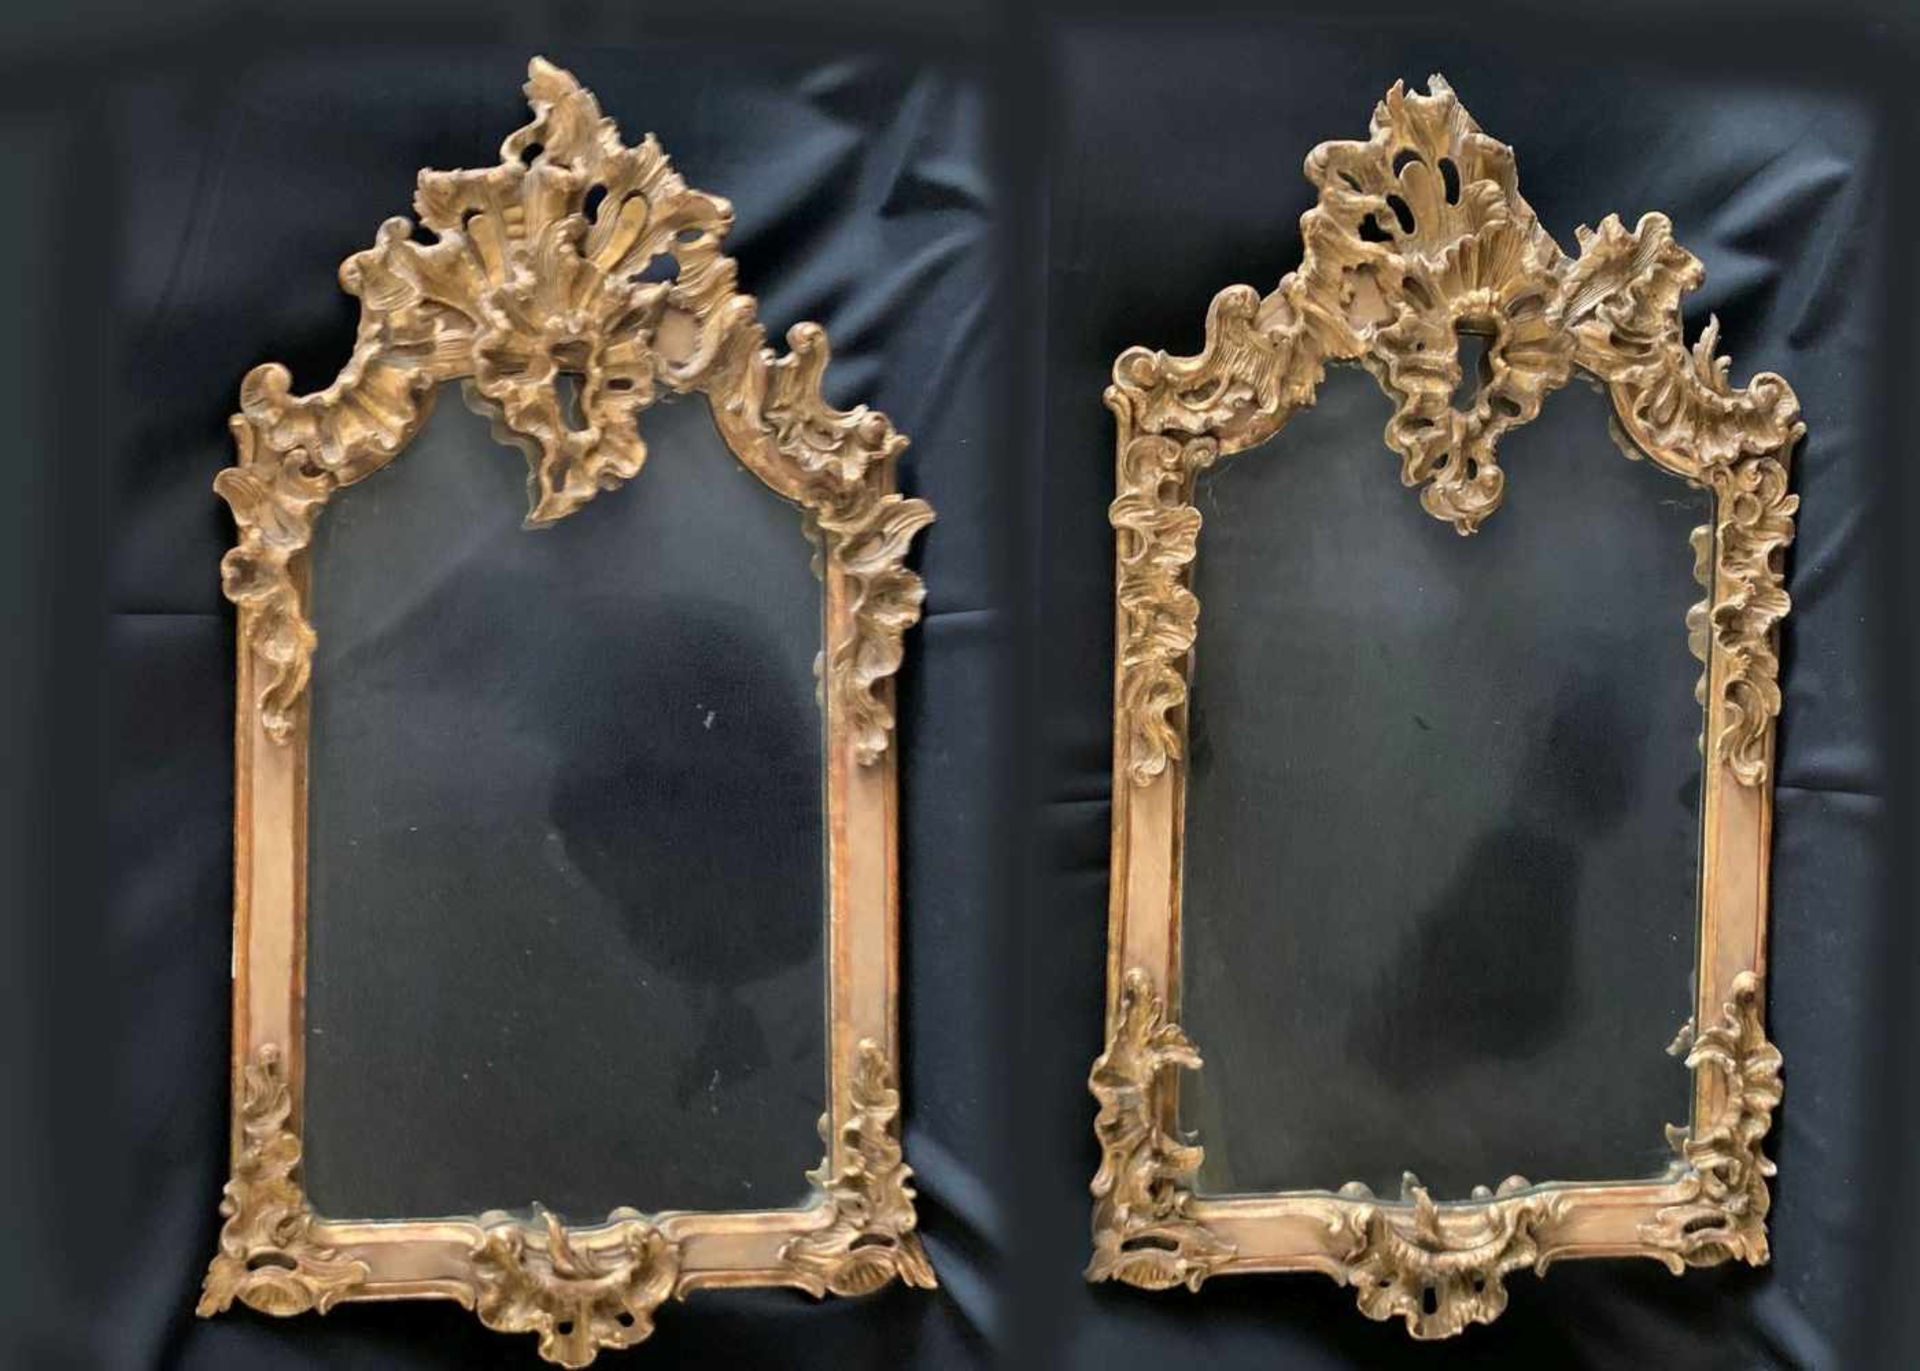 2 Barockspiegel, Zwillingsspiegel, Holz, einer oben bestoßen, 18. Jh, Höhe 100 cm